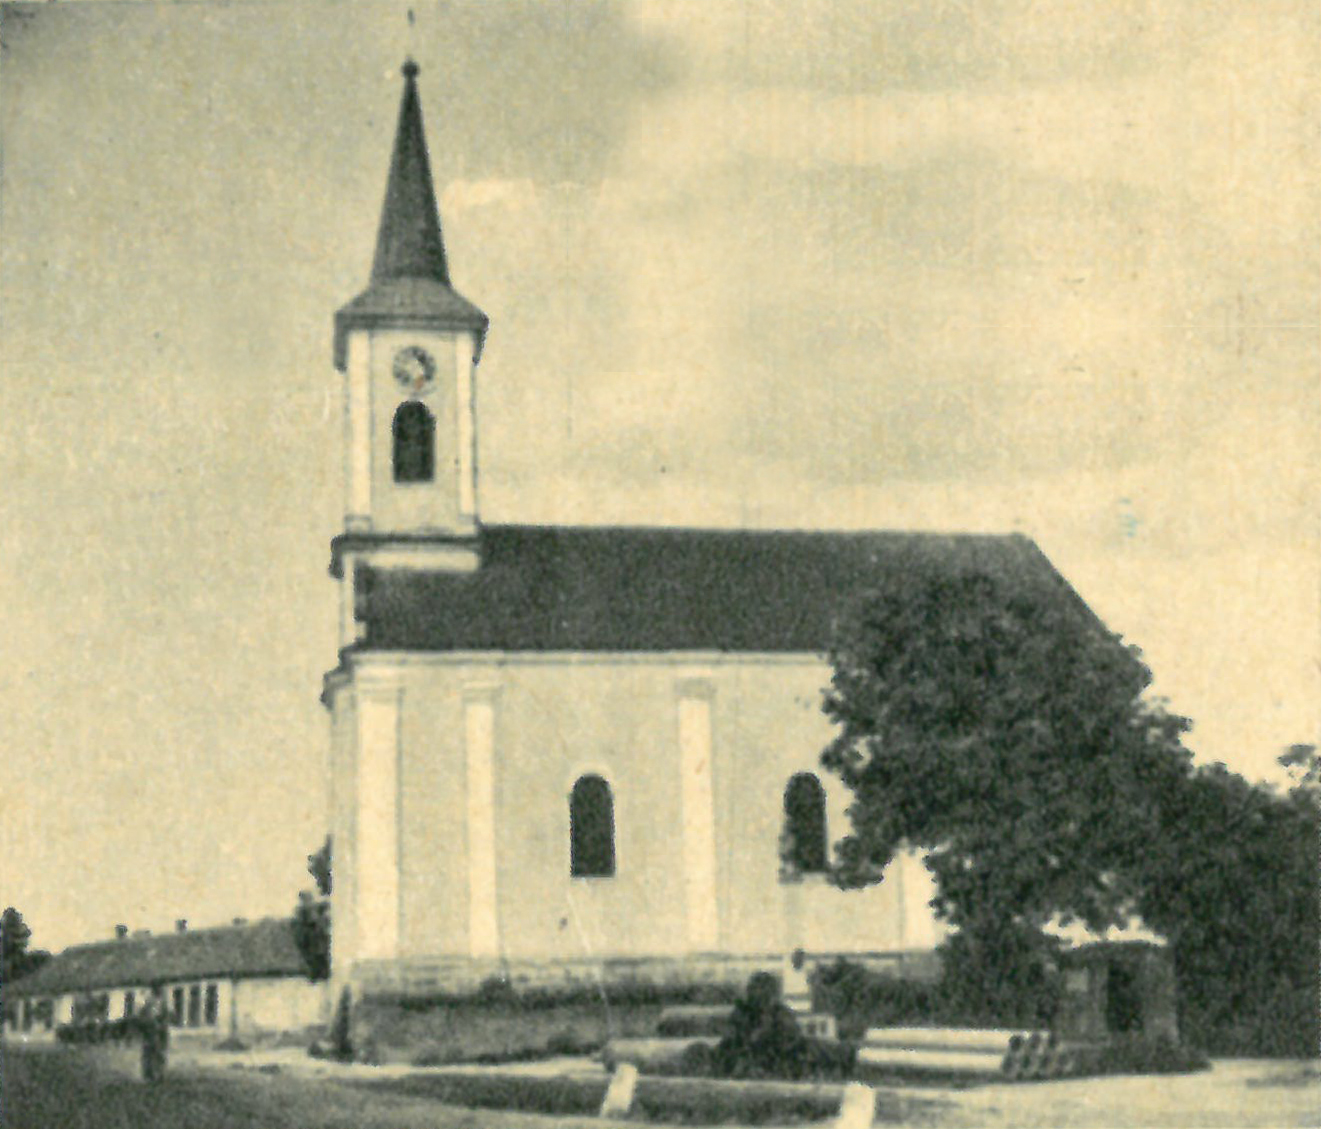 Képeslap fotó a göllei templomról (1942-43 környéke)